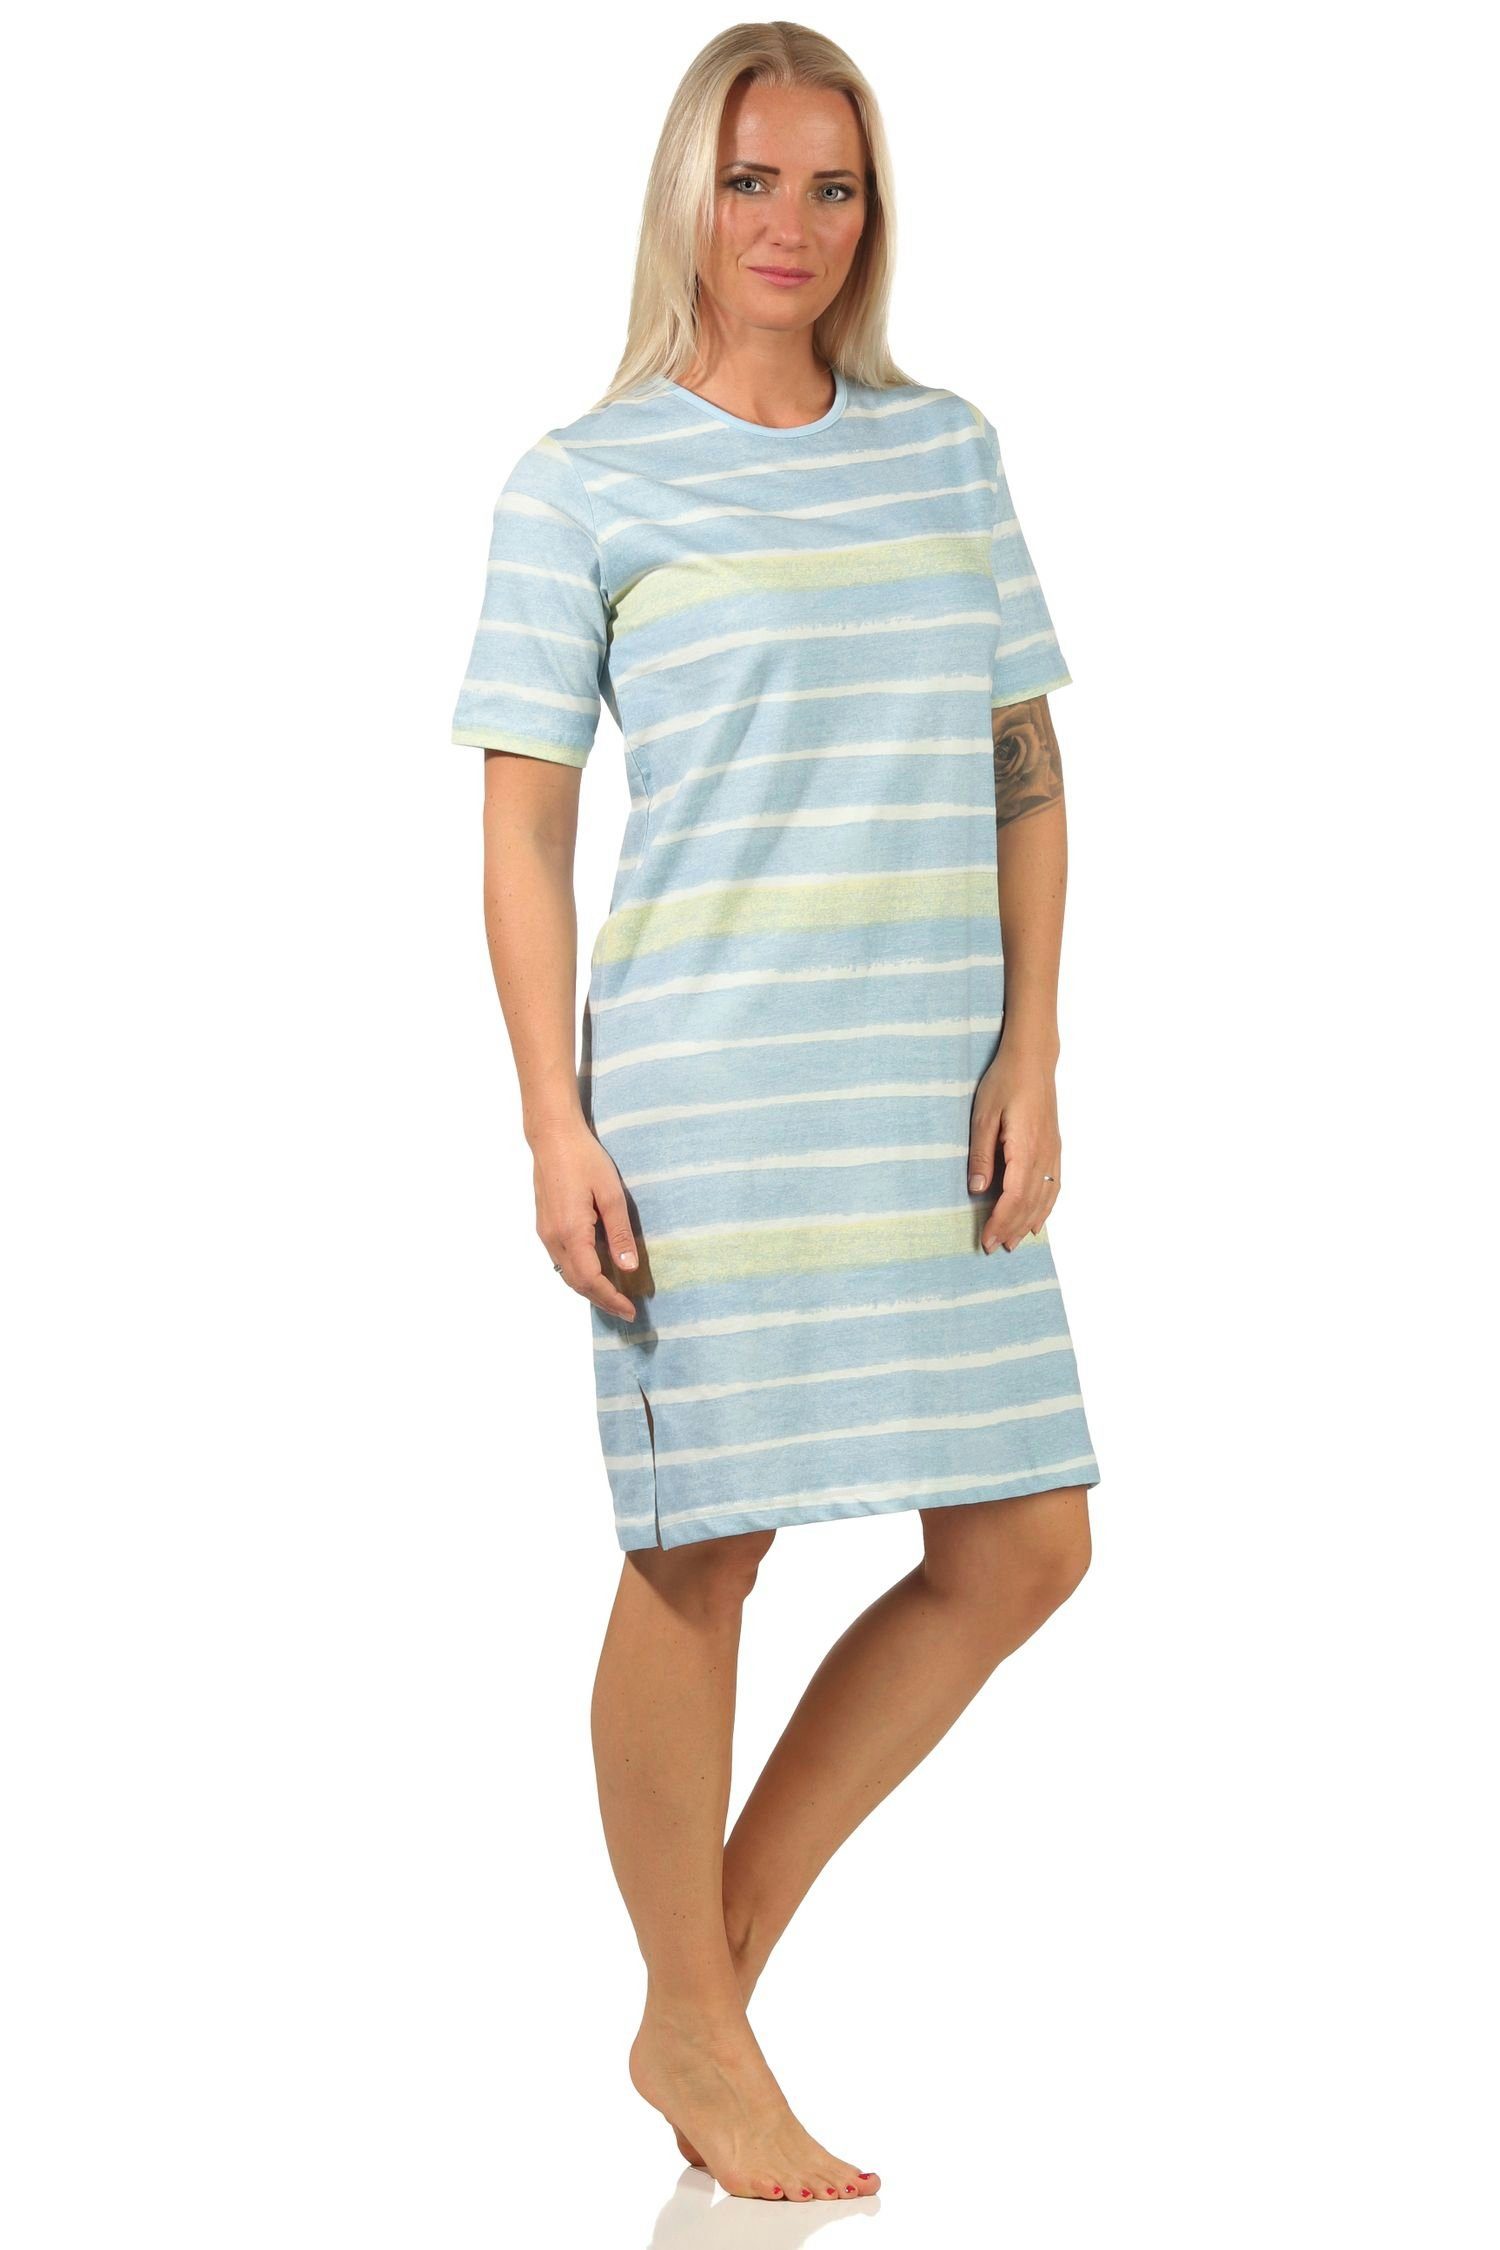 464 112 Nachthemd – Normann hellblau kurzarm Look im Streifen Damen farbenfrohen Nachthemd